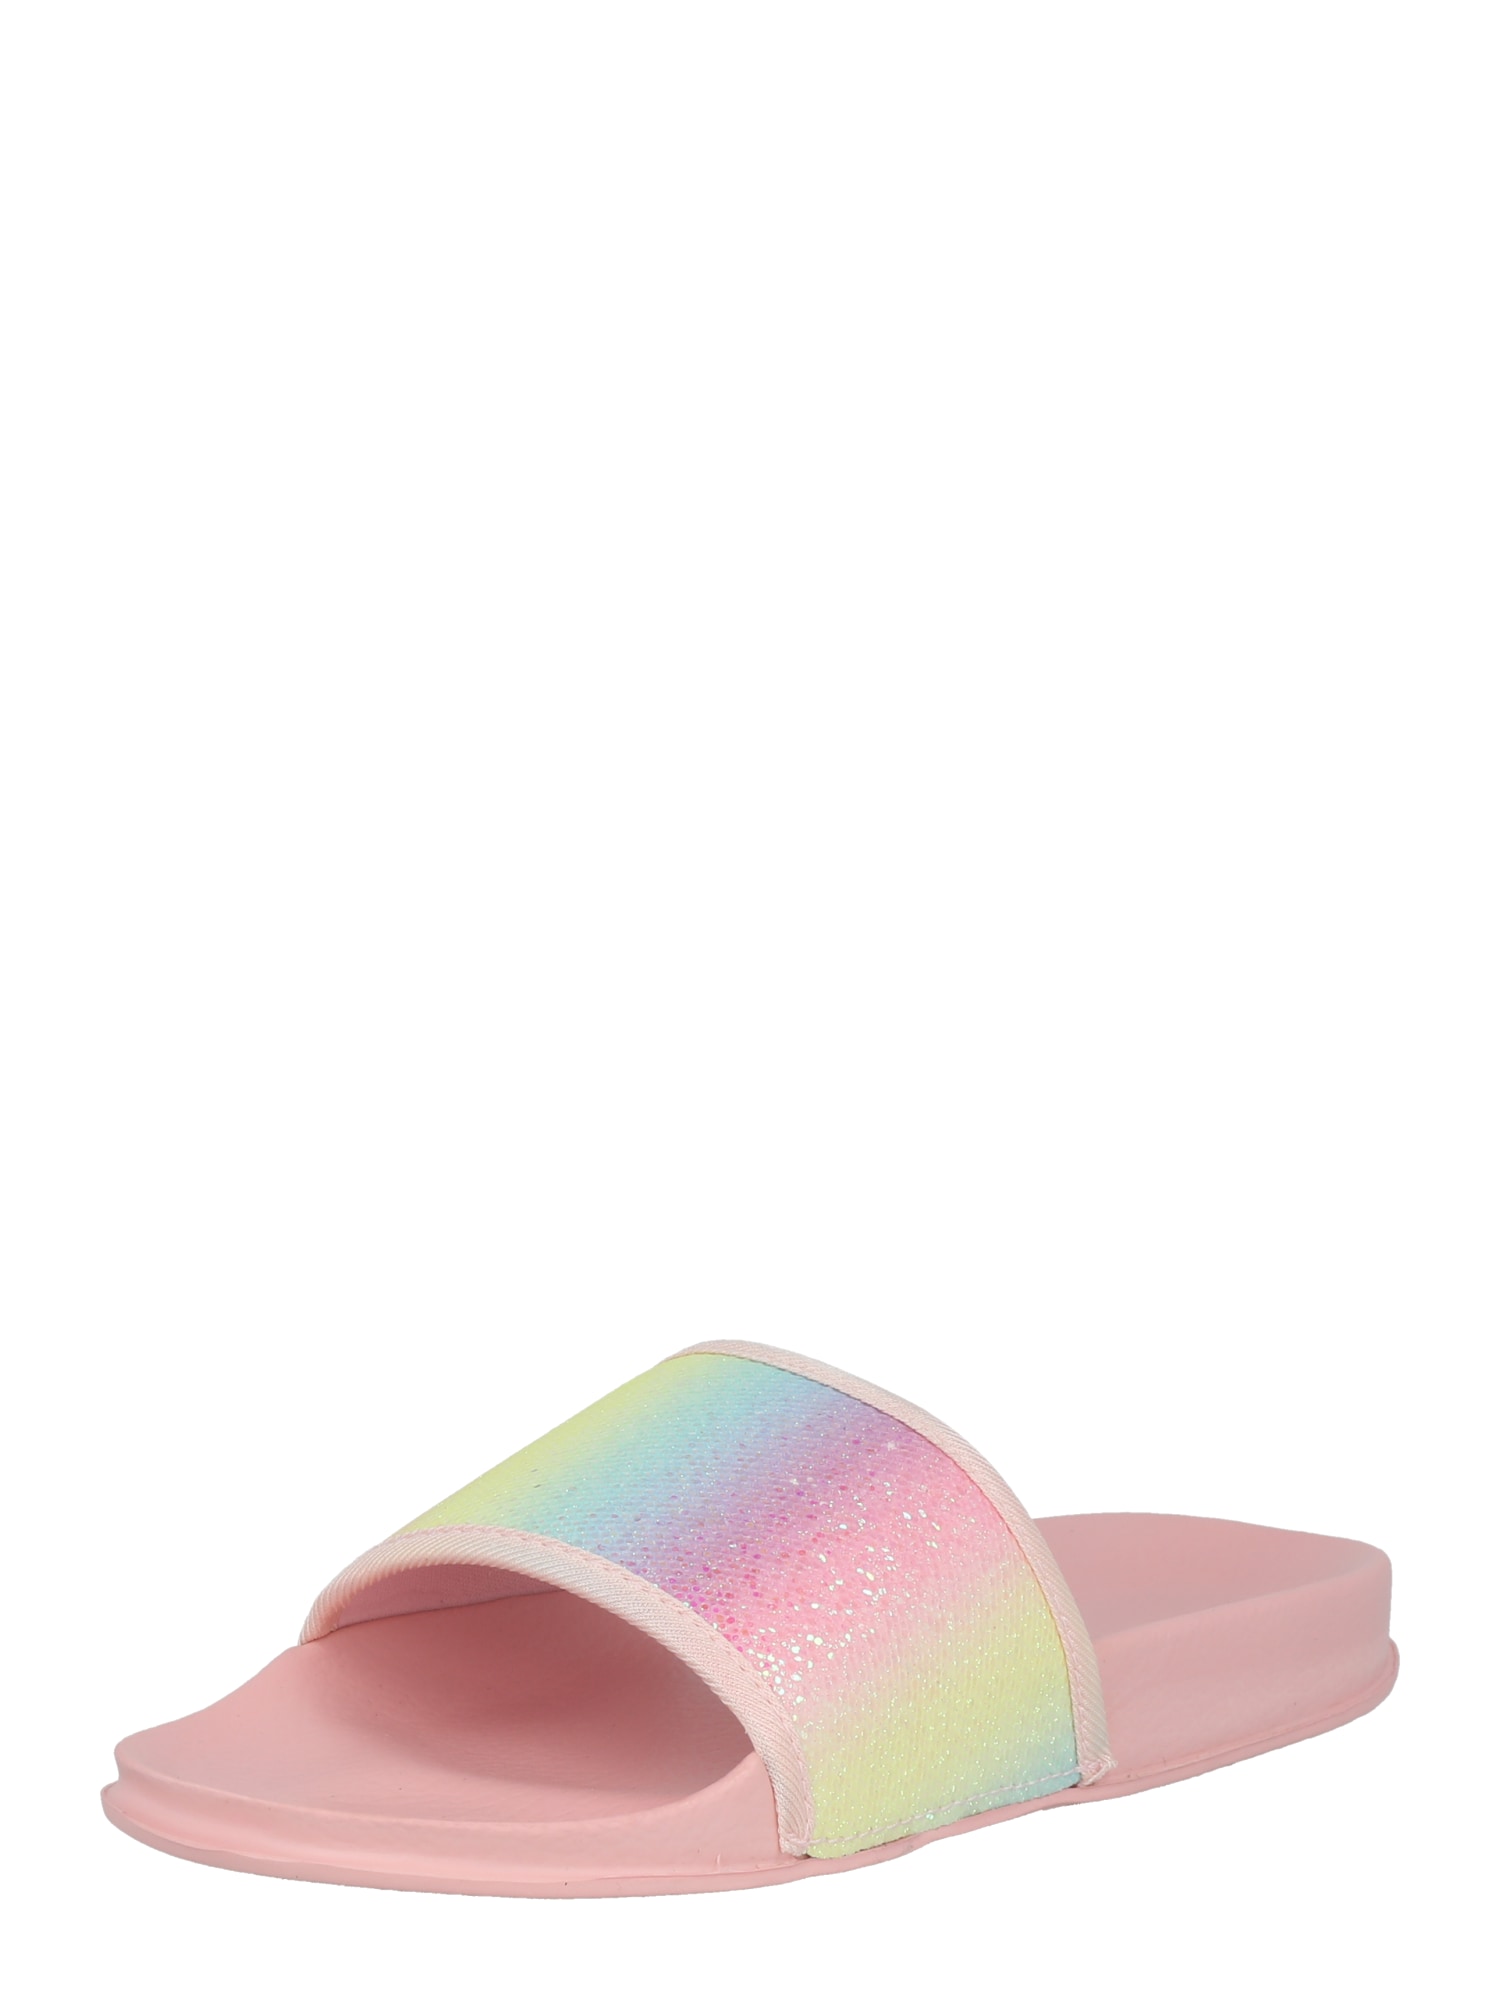 BECK Sandale 'Shiny'  svijetloplava / pastelno žuta / ljubičasta / roza